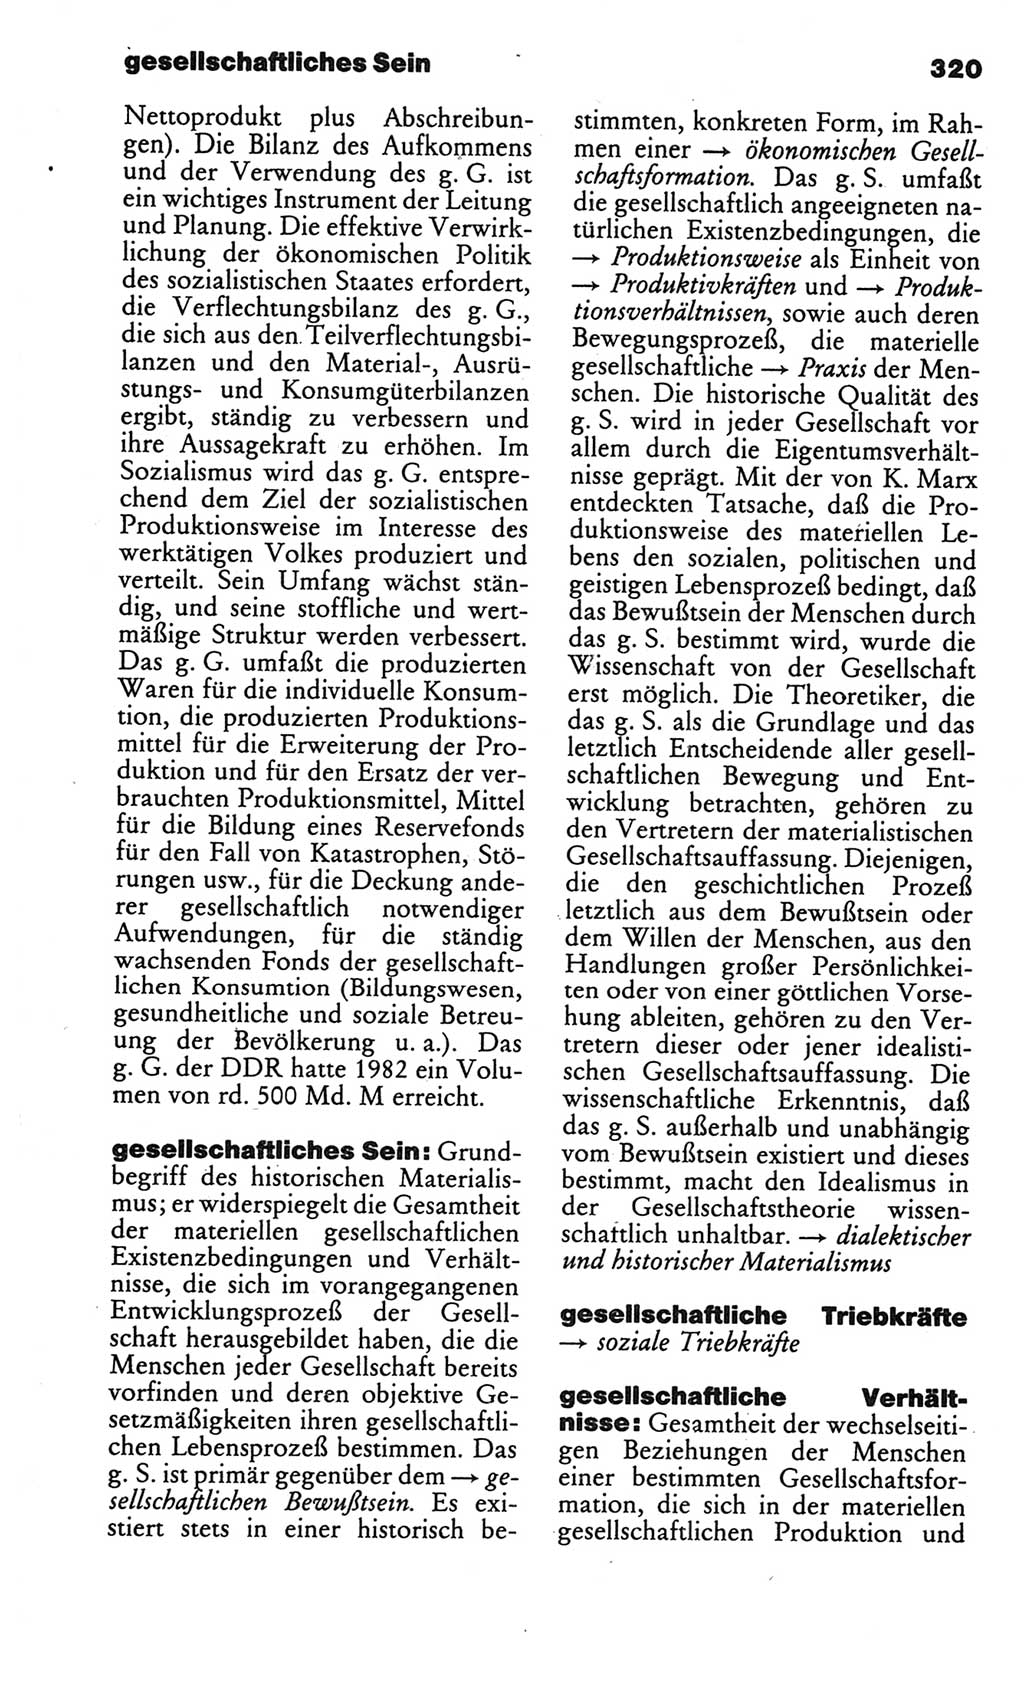 Kleines politisches Wörterbuch [Deutsche Demokratische Republik (DDR)] 1986, Seite 320 (Kl. pol. Wb. DDR 1986, S. 320)